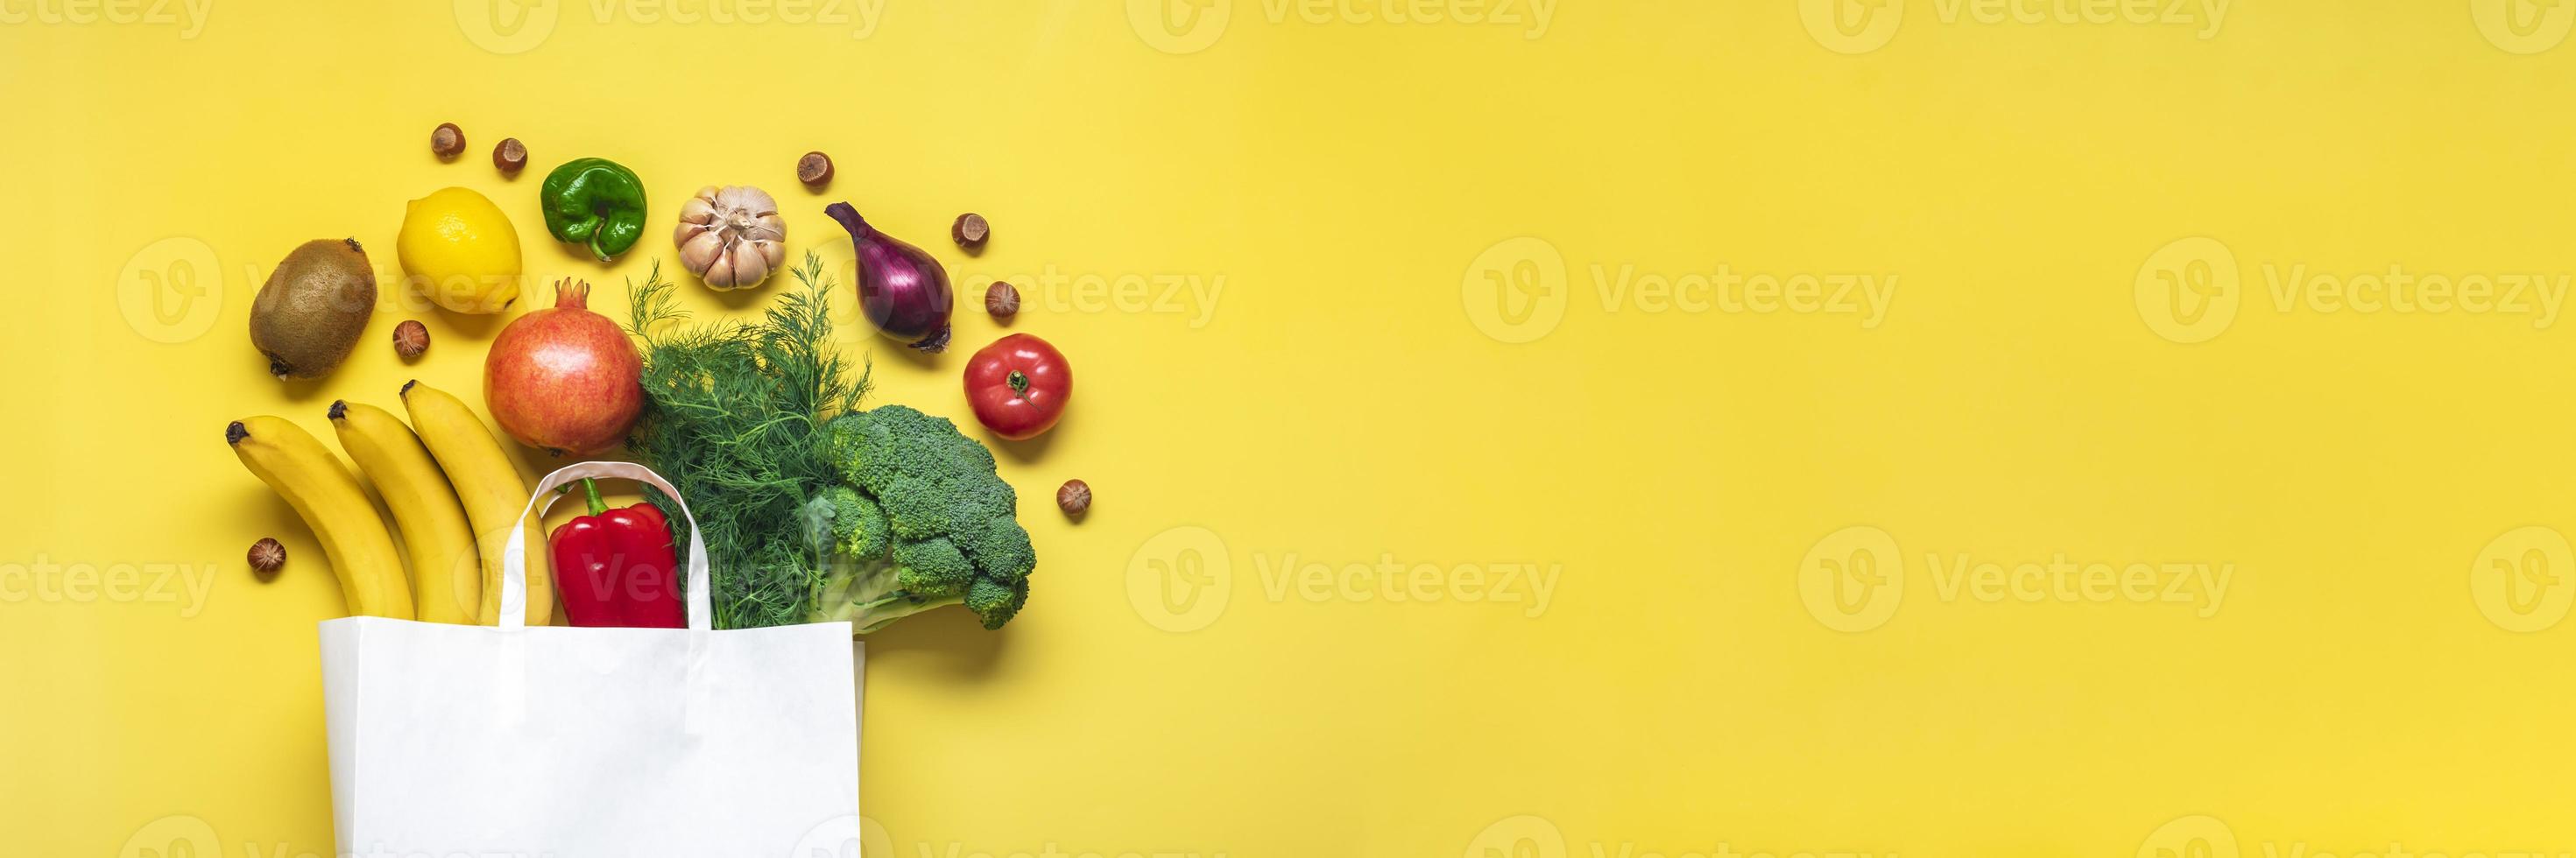 sac de magasin en papier écologique avec légumes verts biologiques crus isolés sur fond jaune à plat, vue de dessus zéro déchet, concept sans plastique alimentation saine et désintoxication, concept d'agriculture photo